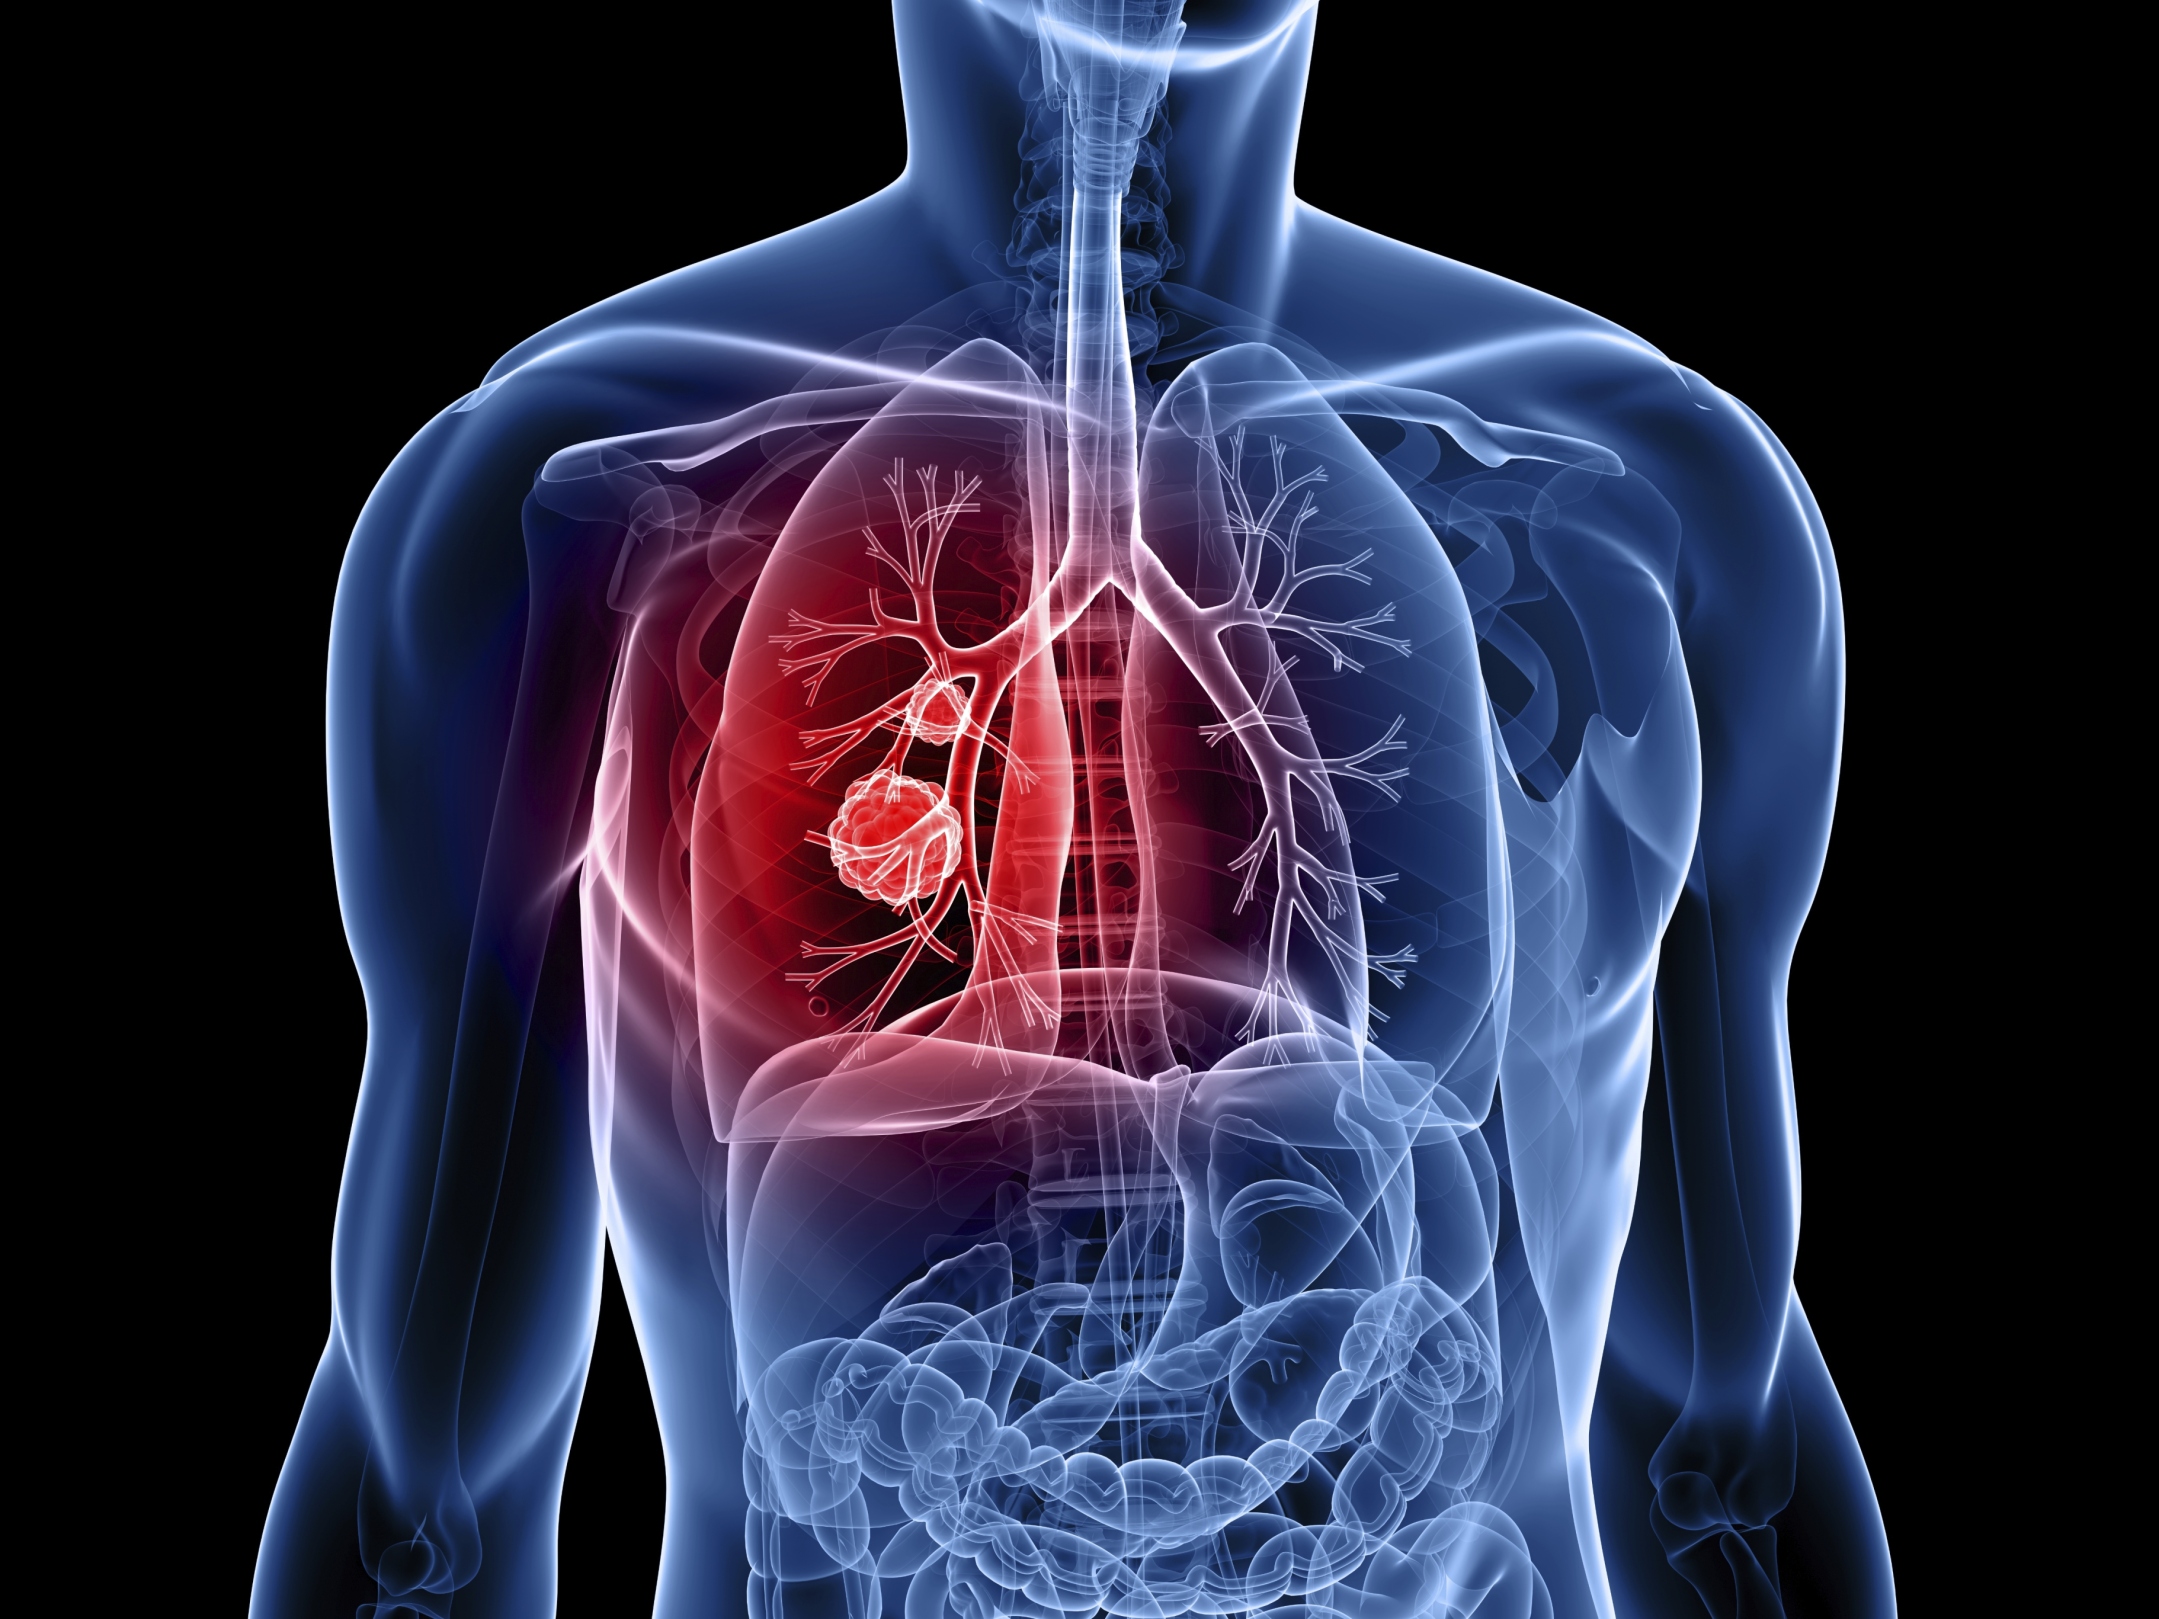 Forschungsförderung für die „Biohybrid“-Lunge